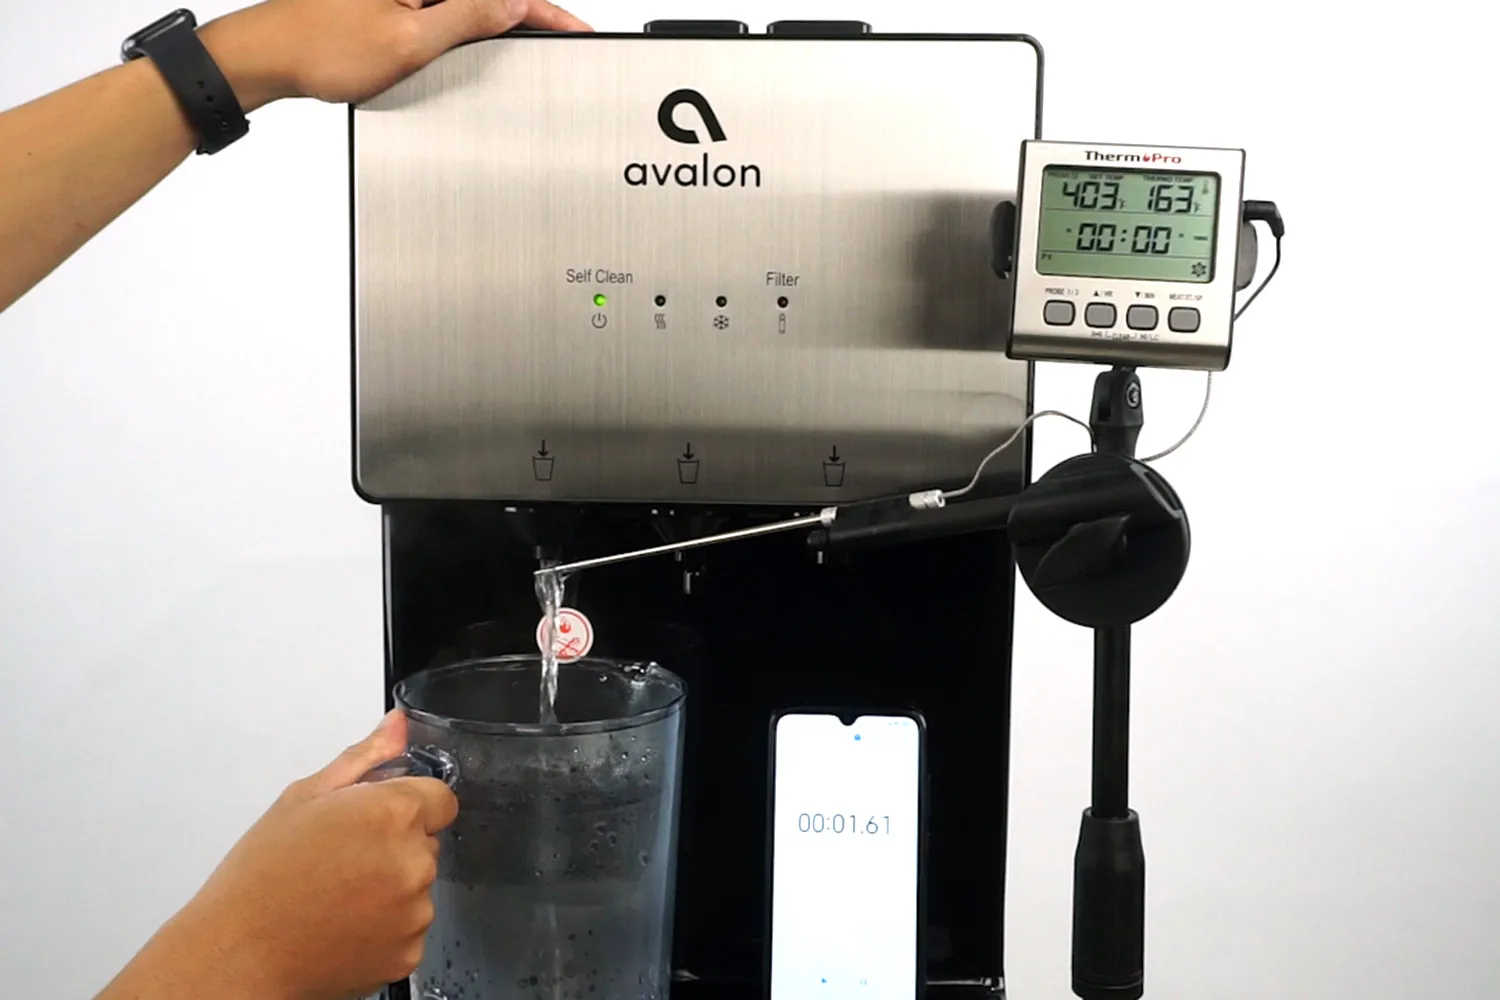 https://cdn.healthykitchen101.com/reviews/images/water-cooler-dispensers/avalon-a5-bottleless-water-cooler-dispenser-hot-water-test-clhvldk1m0000ey88apvh8m8t.jpg